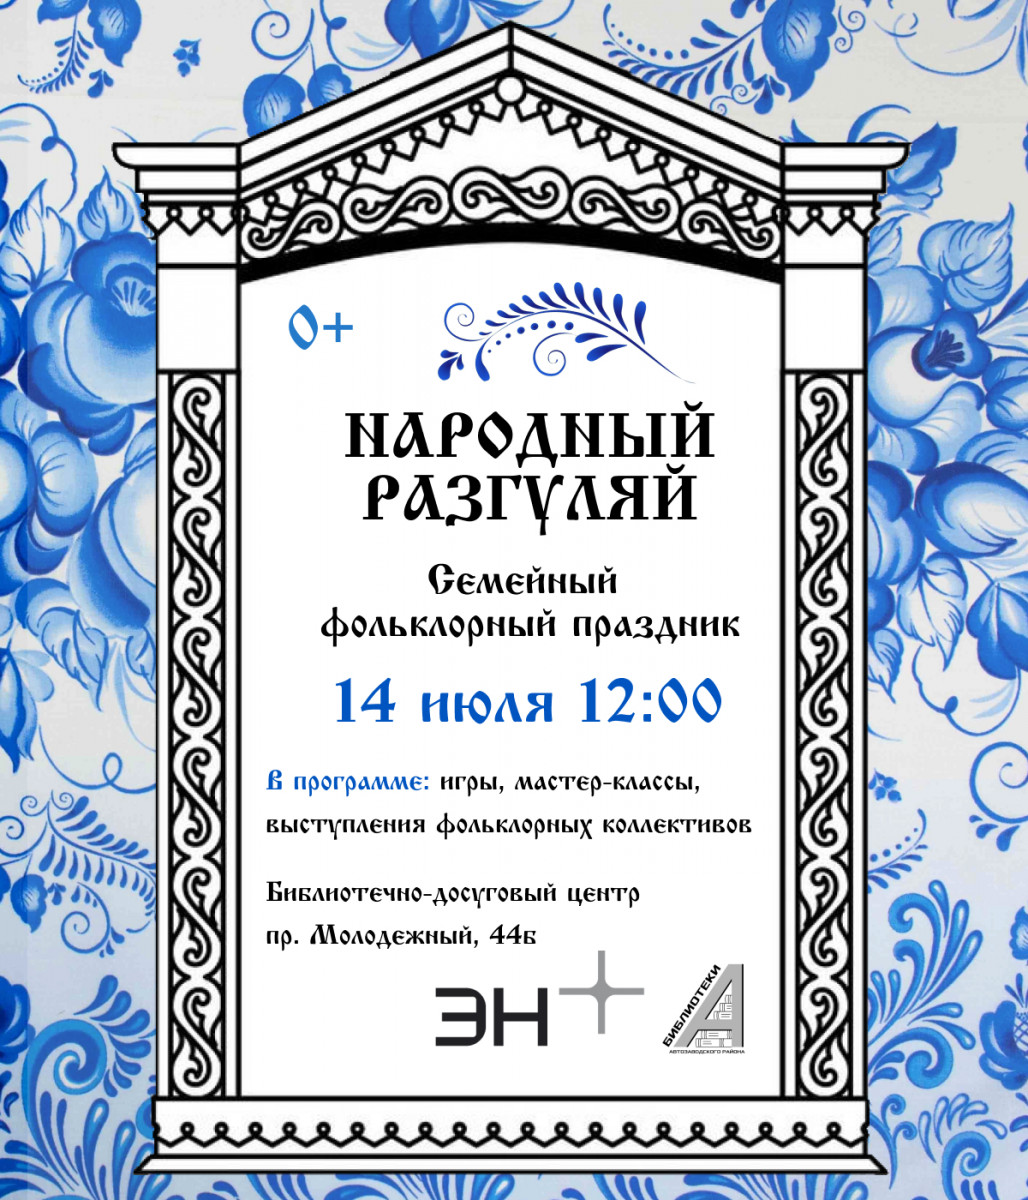 Семейный праздник «Народный разгуляй» пройдет в Нижнем Новгороде 14 июля